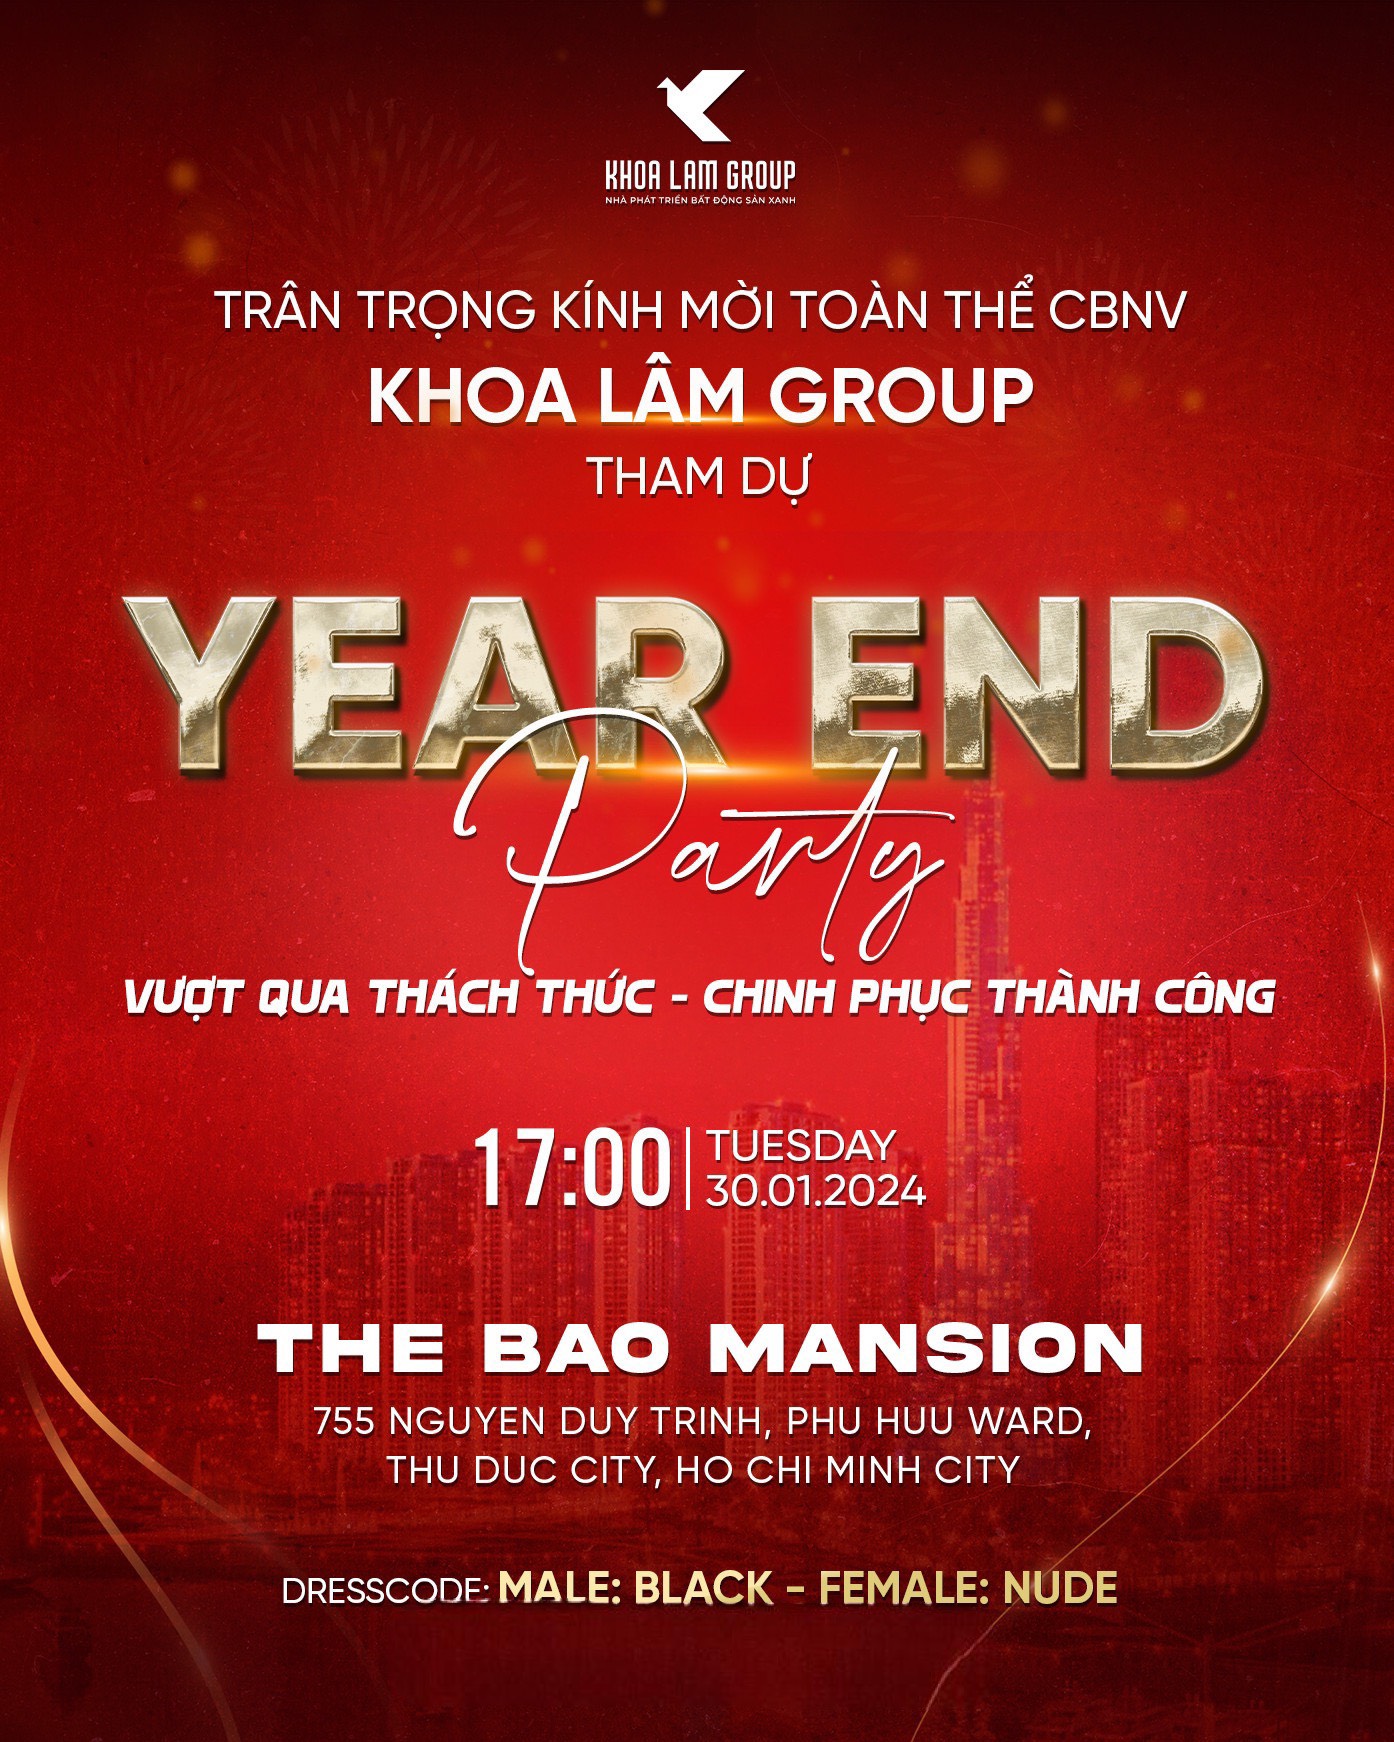 YEAR AND PARTY 2023 - Vuot Qua Thach Thuc - Chinh Phuc Thanh Cong Khoa Lam Group